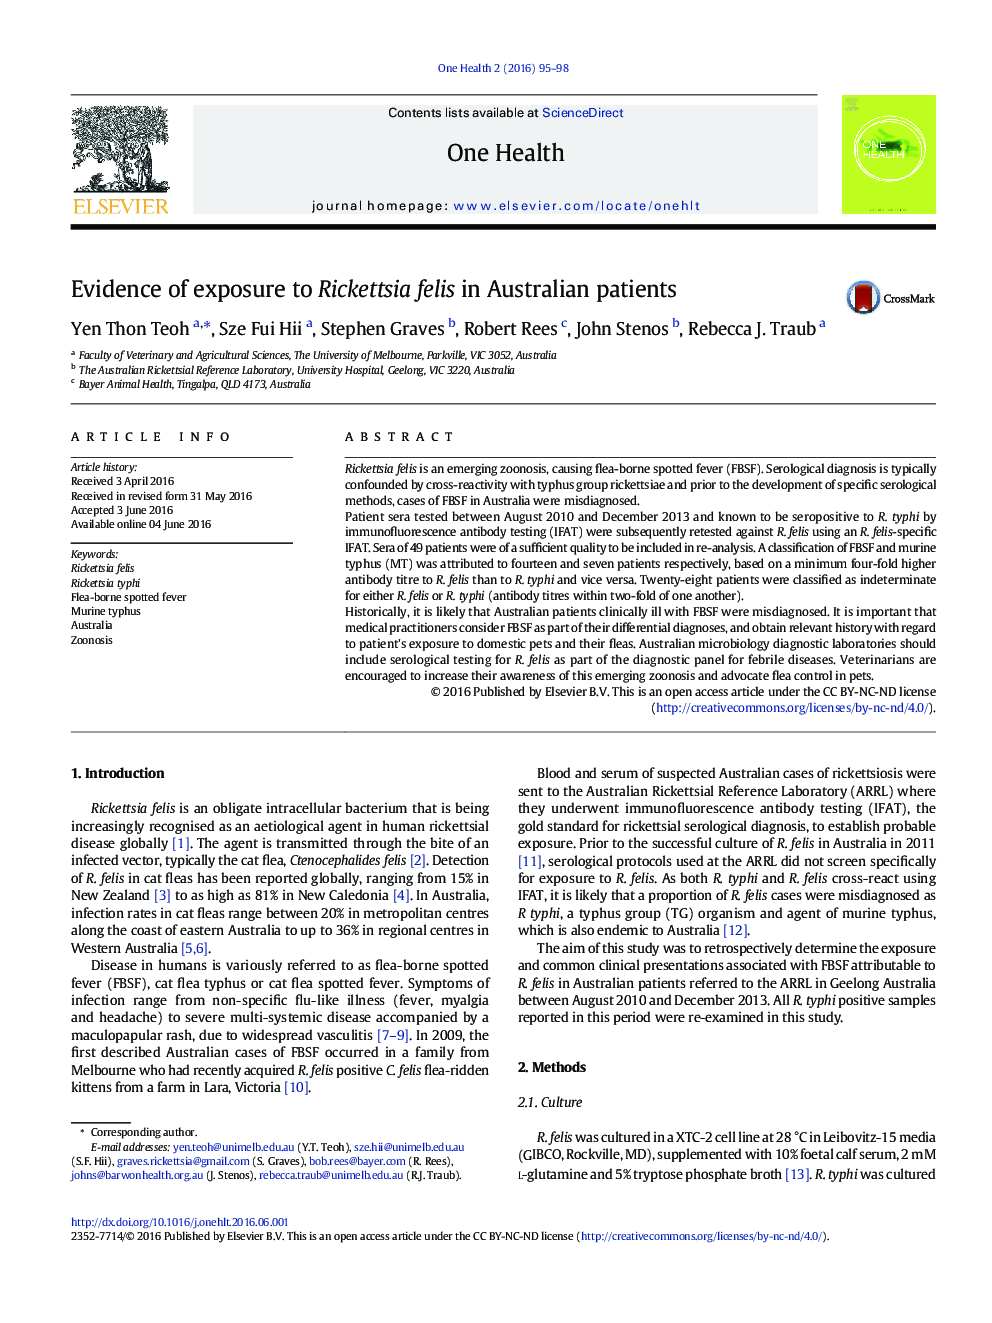 مدارک و شواهد از قرار گرفتن در معرض ریکتزیا Felis در بیماران استرالیایی